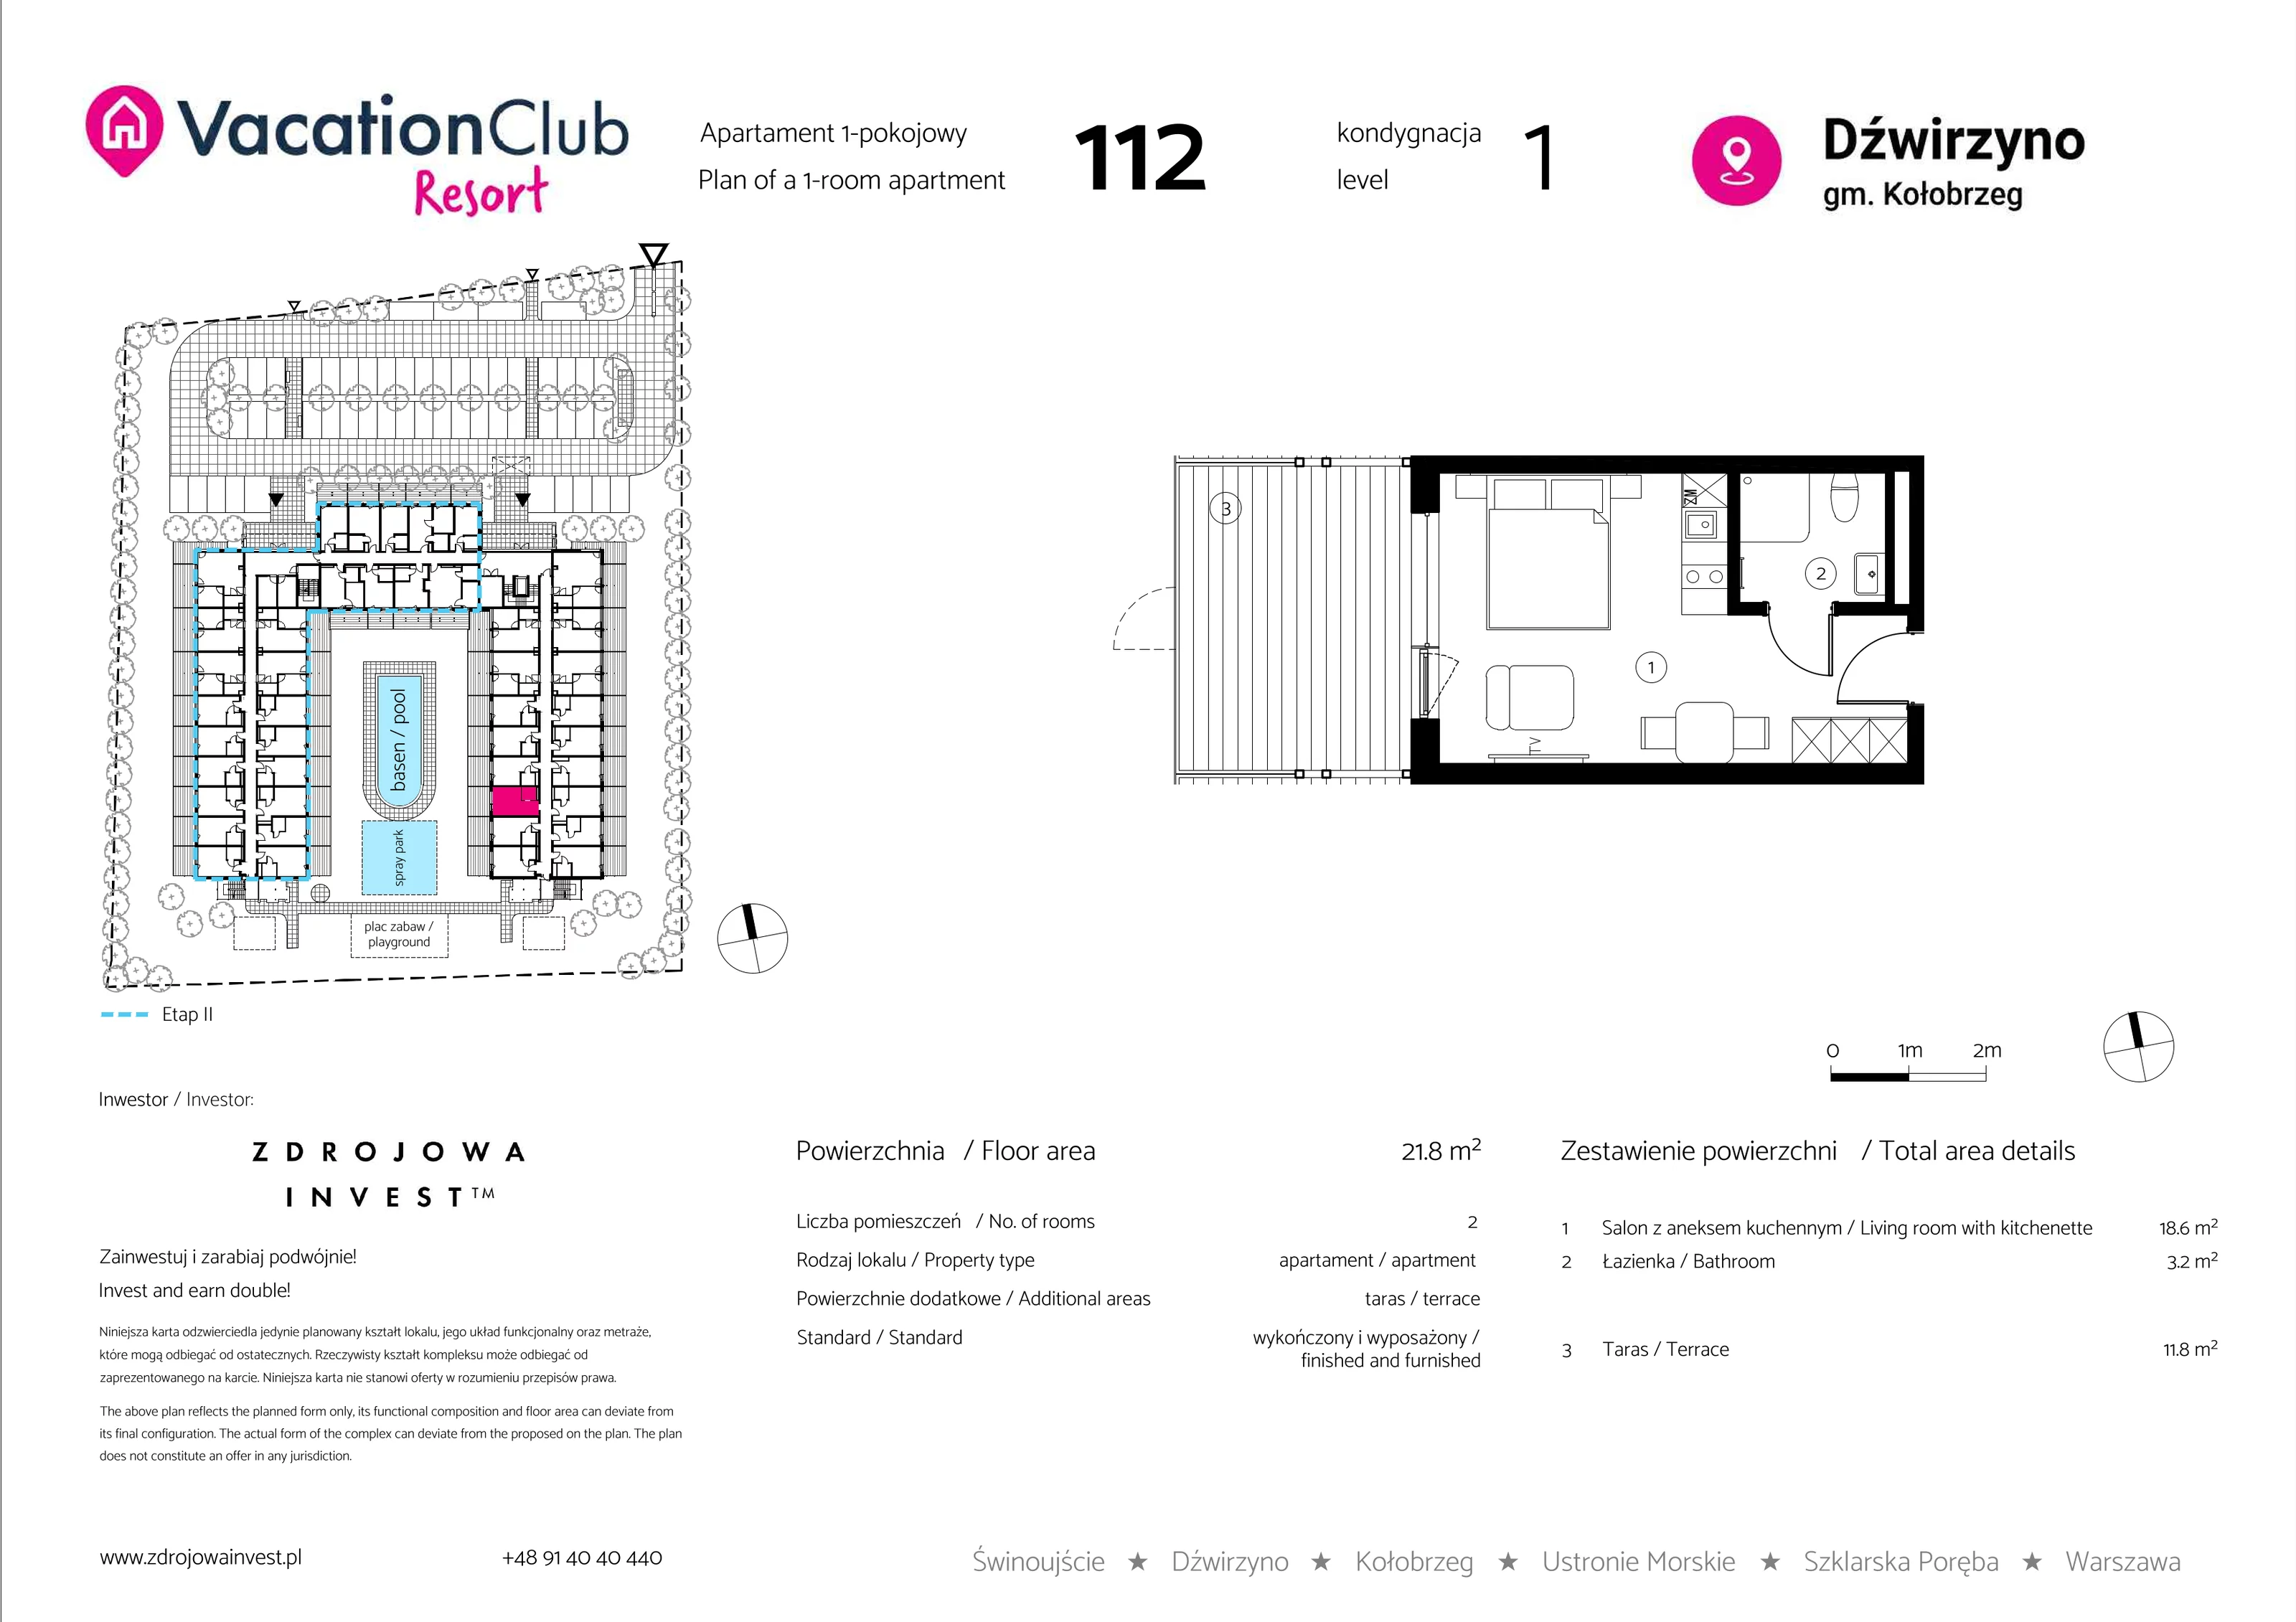 Apartament 21,80 m², parter, oferta nr 112, Vacation Club Resort - apartamenty wakacyjne, Dźwirzyno, ul. Wczasowa 8